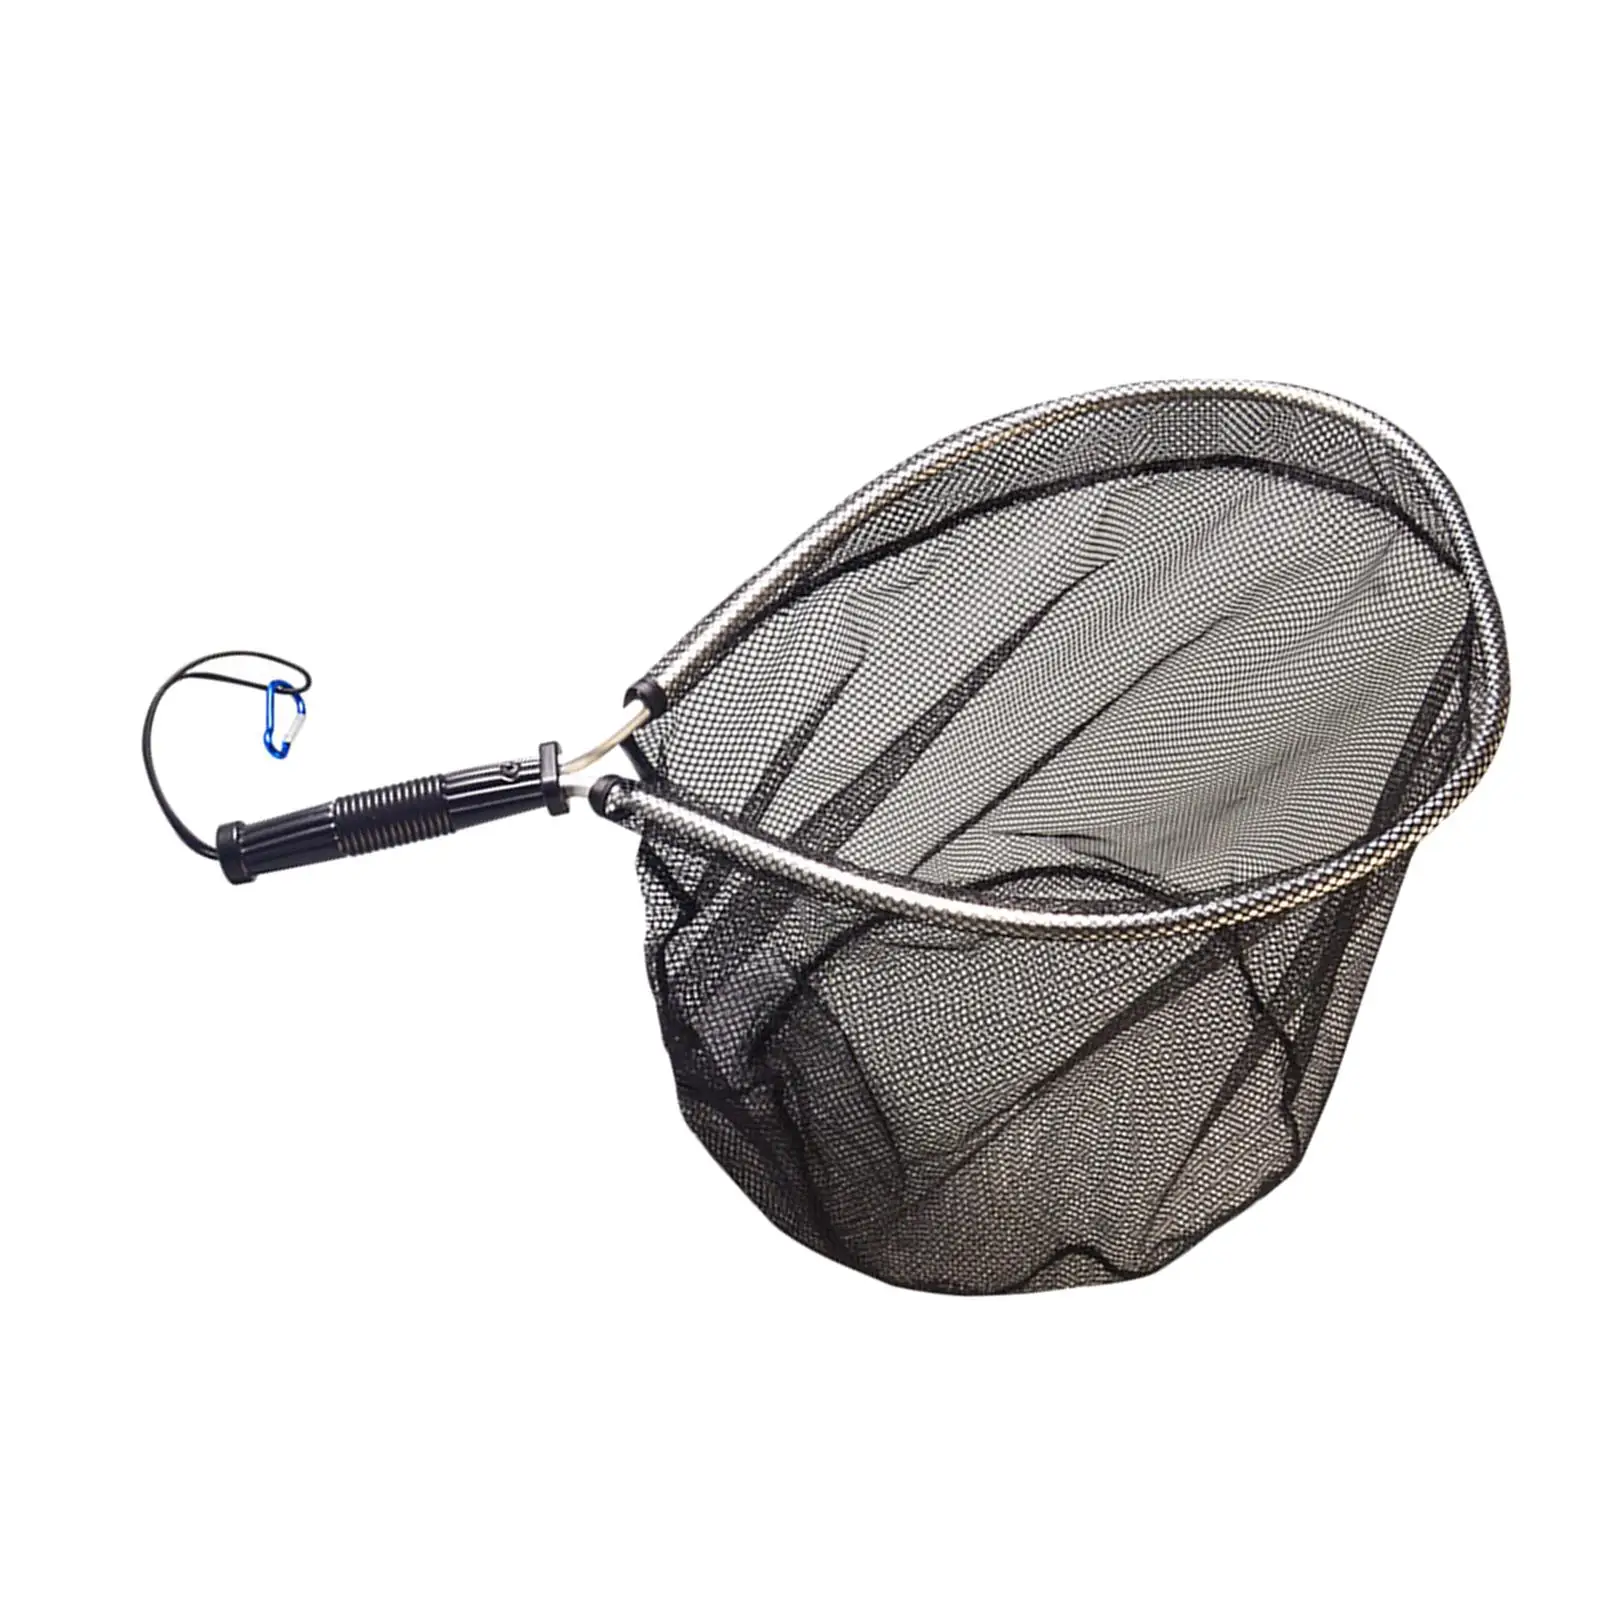 Fishing Landing Net Portable Lightweight Fishing Mesh Net Nonslip Grip for Freshwater Saltwater Kayak Boat Fishing Accessories